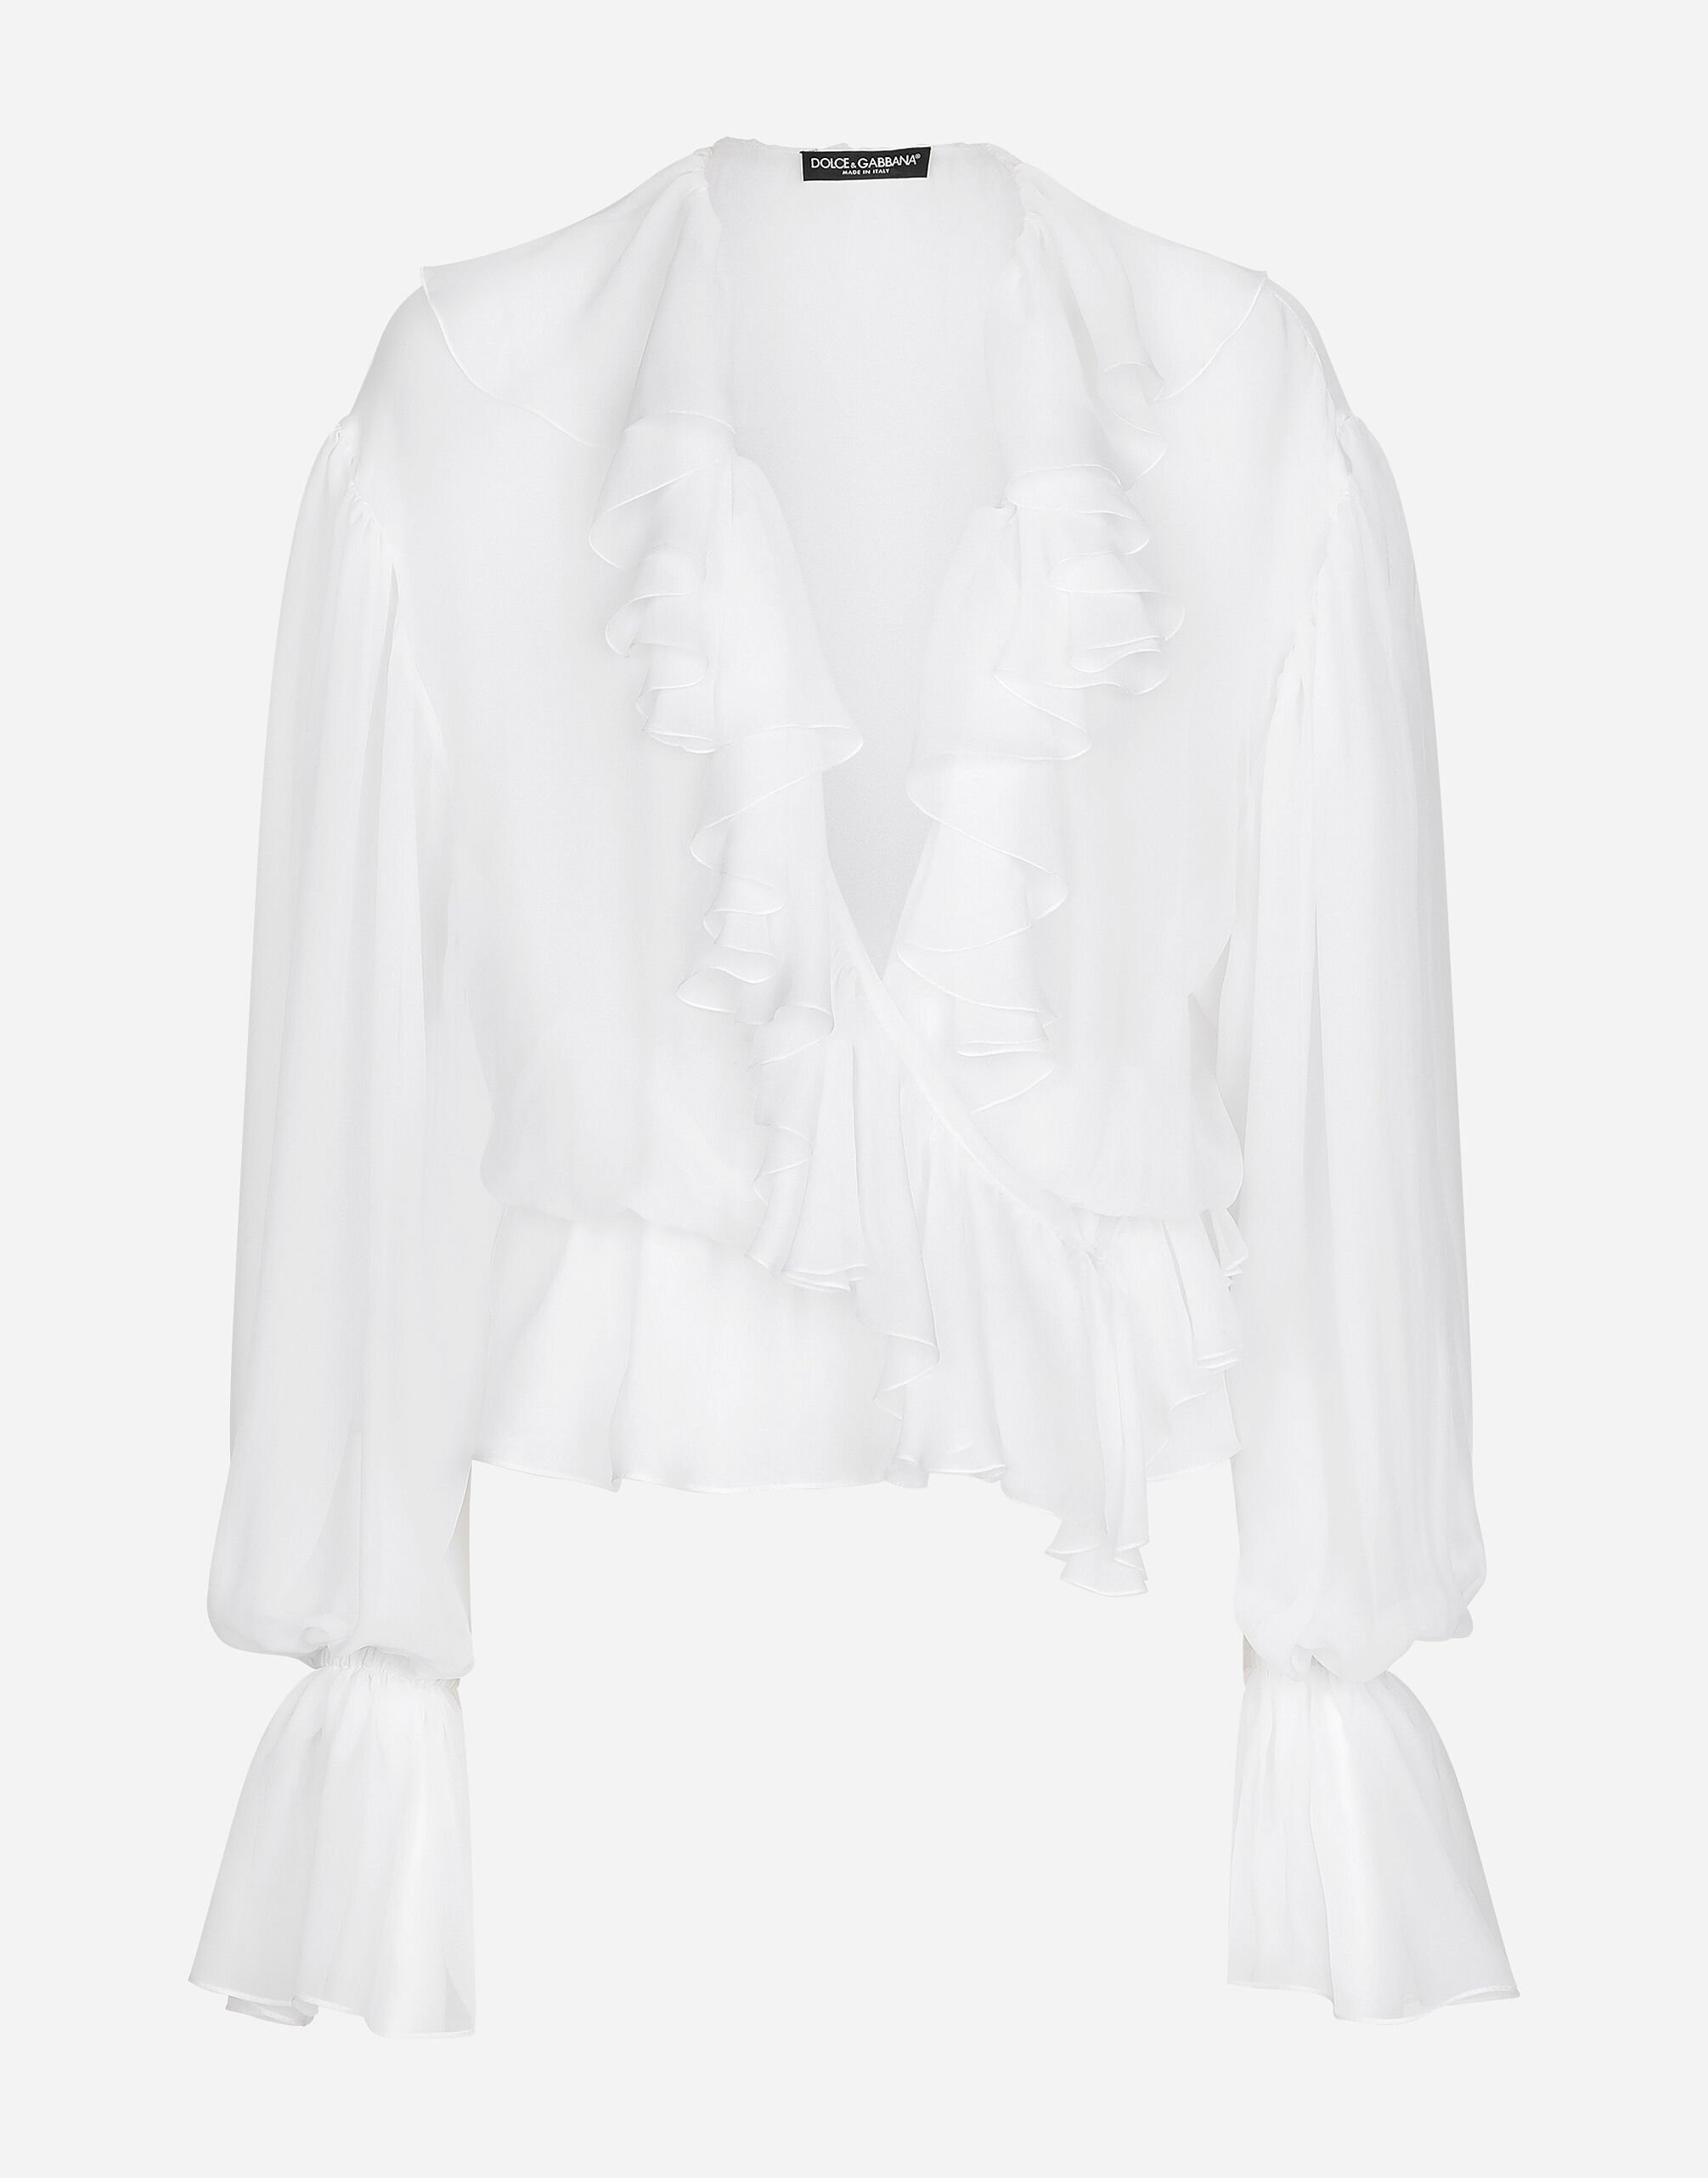 Dolce & Gabbana Chiffon blouse with ruffles White F0D1QTFU600